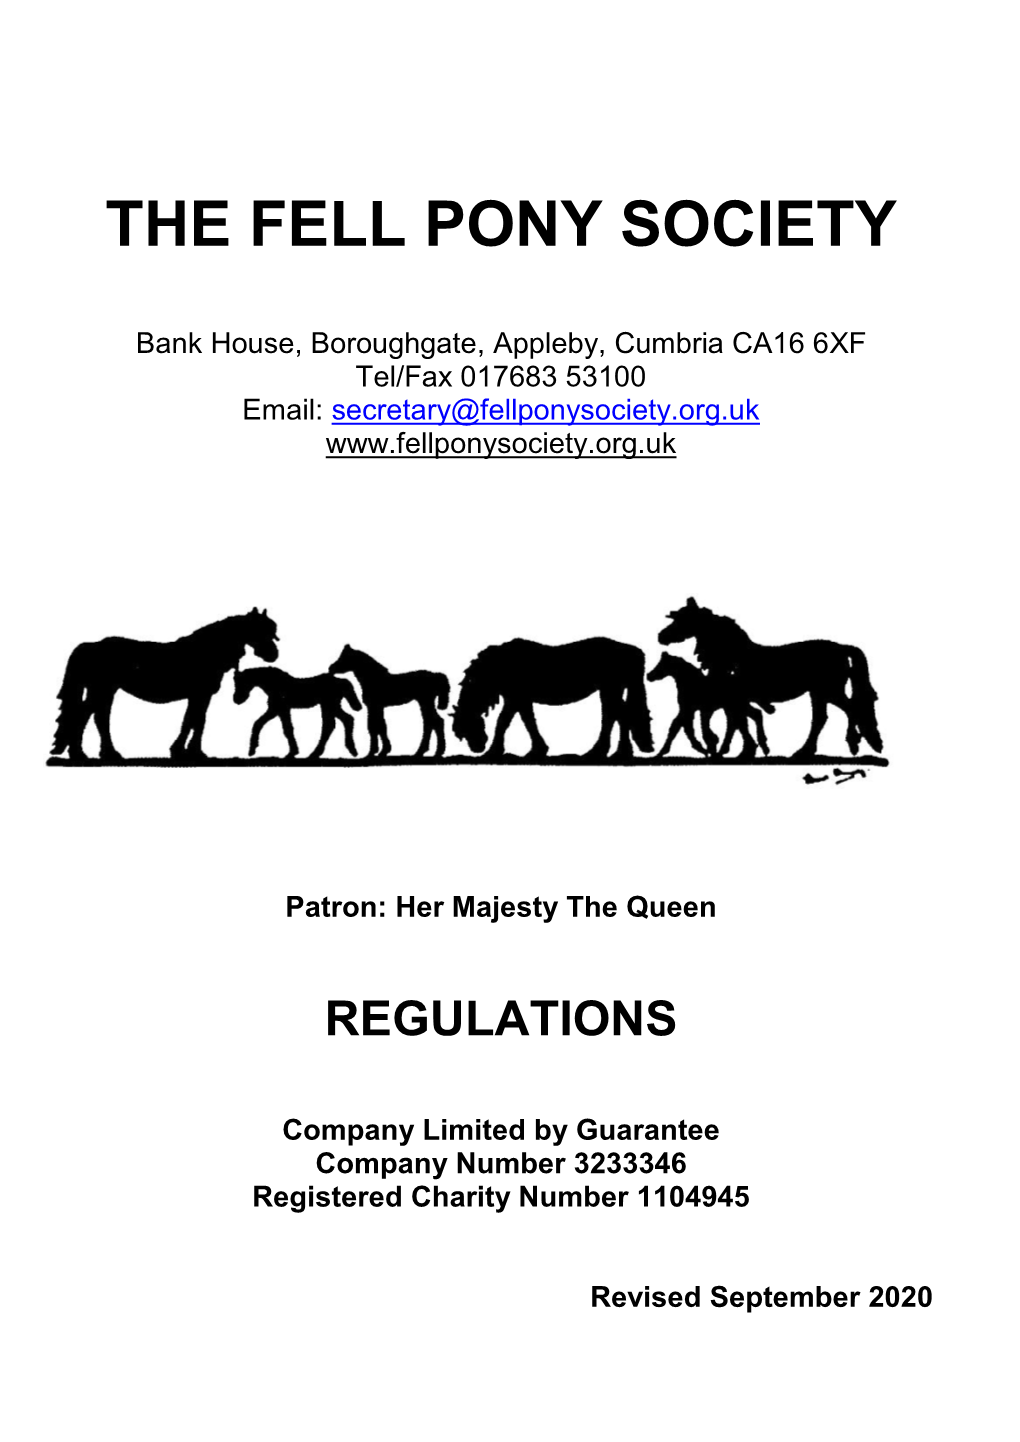 The Fell Pony Society